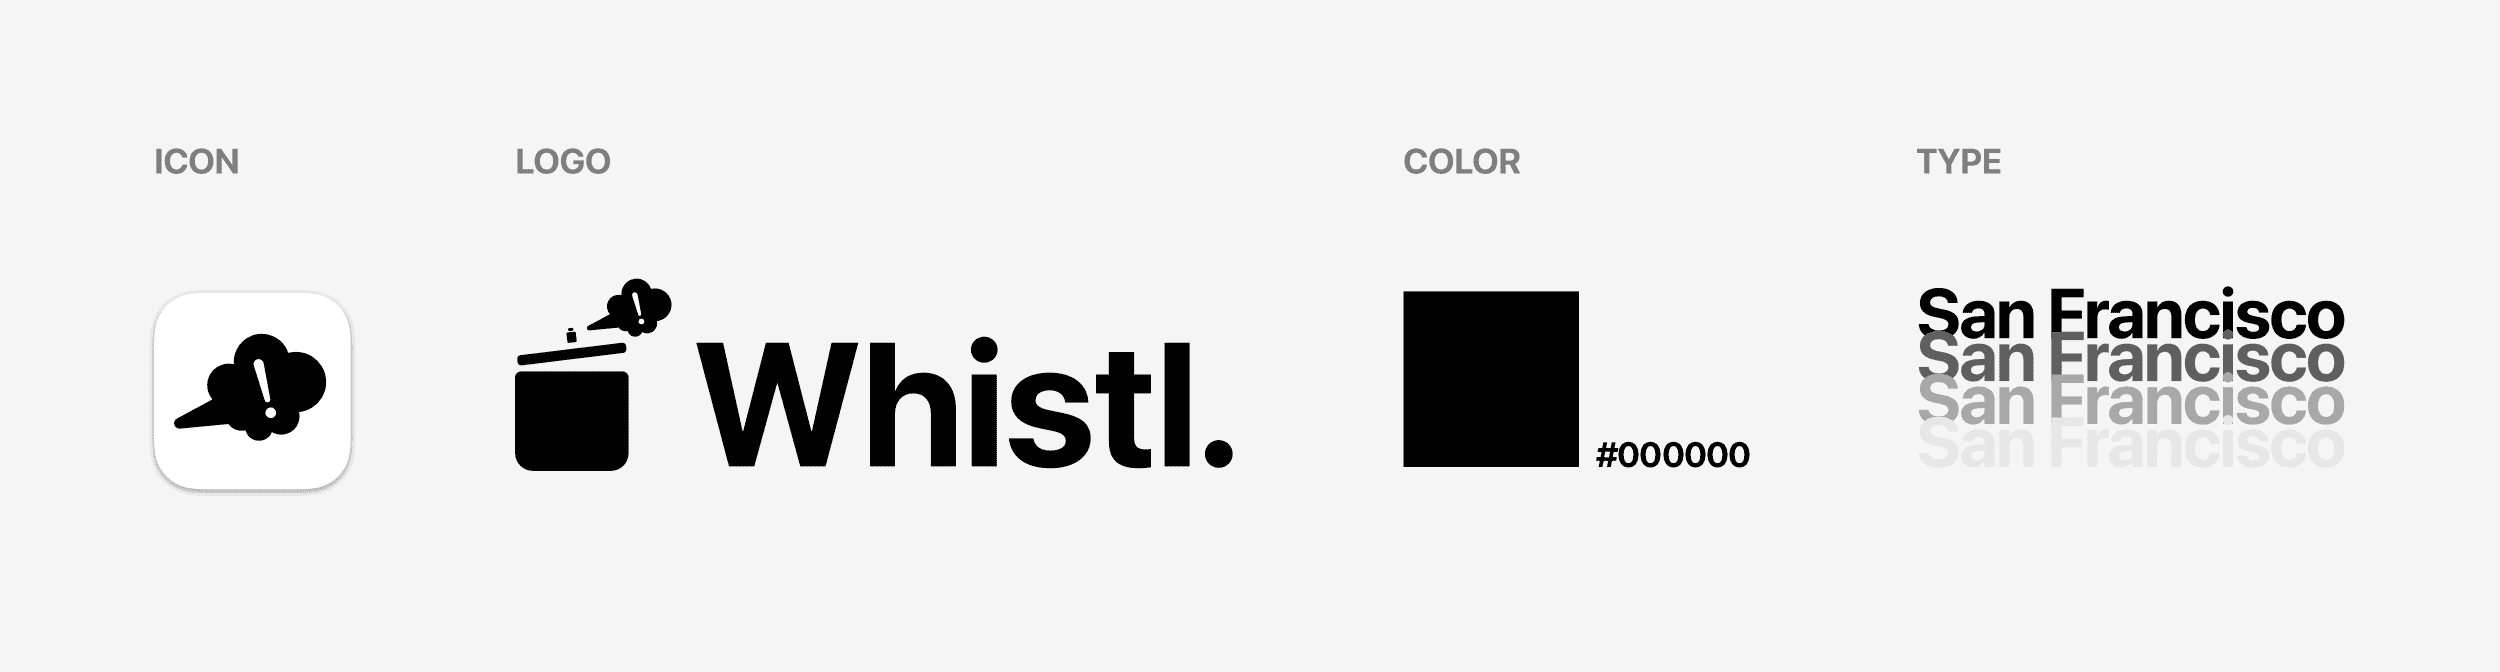 branding assets for Whistl App